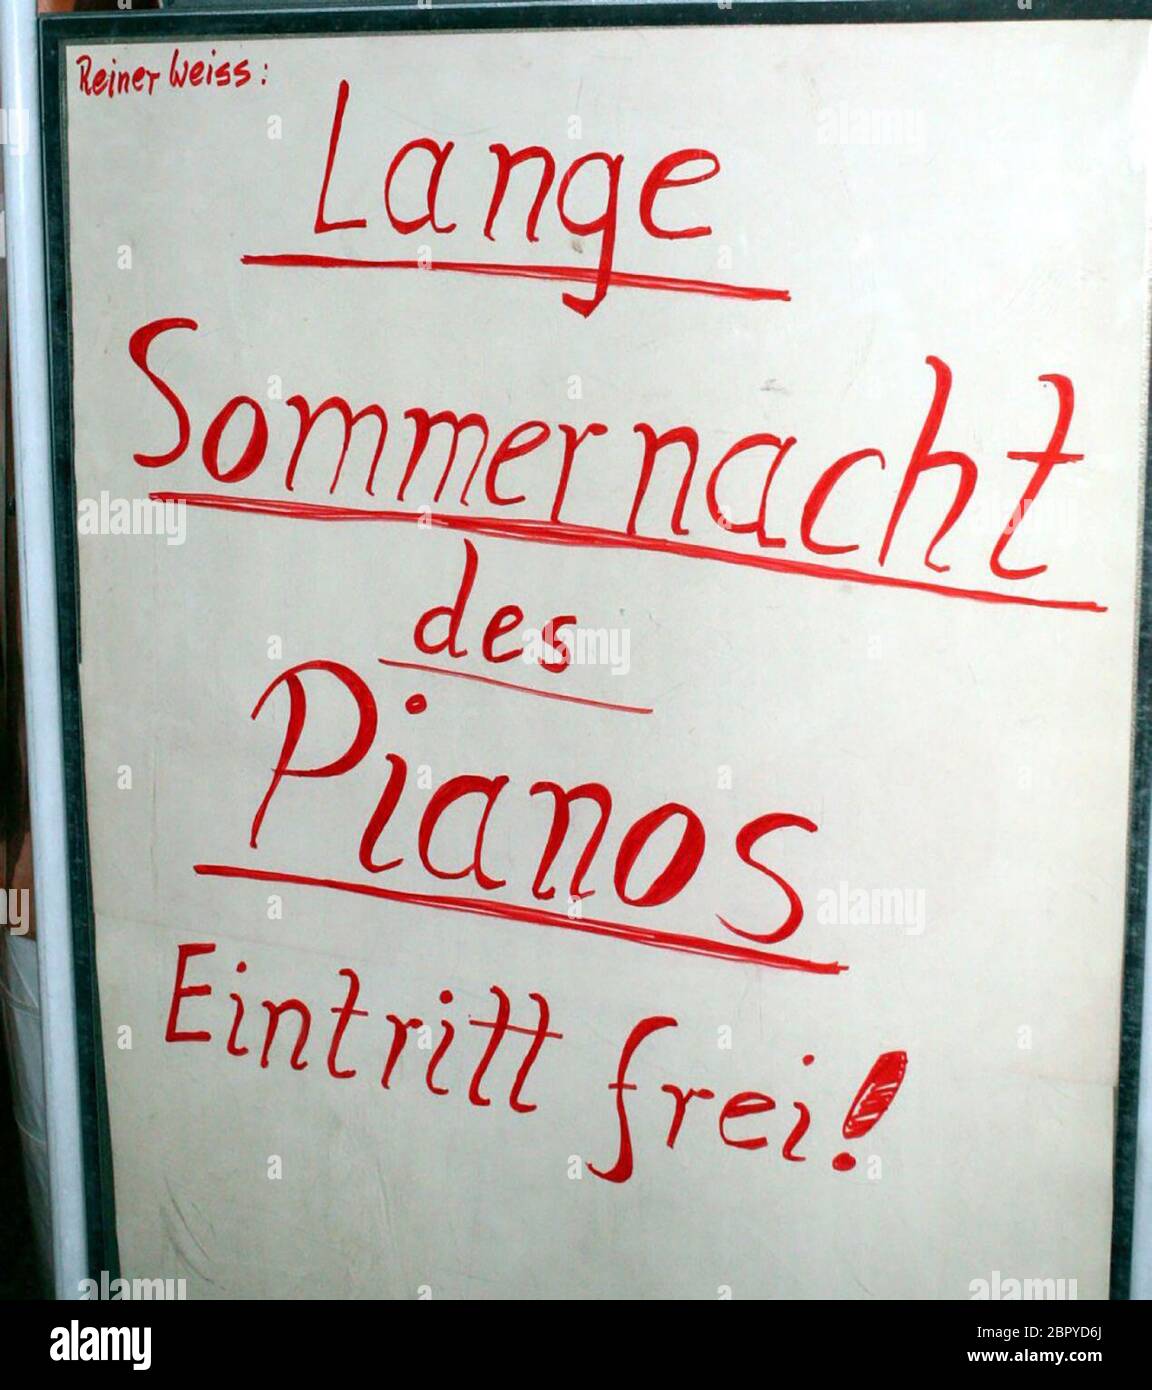 Reiner Weiss: Lange Sommernacht des Pianos - Der deutsche Musiker Reiner Weiss auf der uni-Wiese während eines Konzertes. Foto Stock